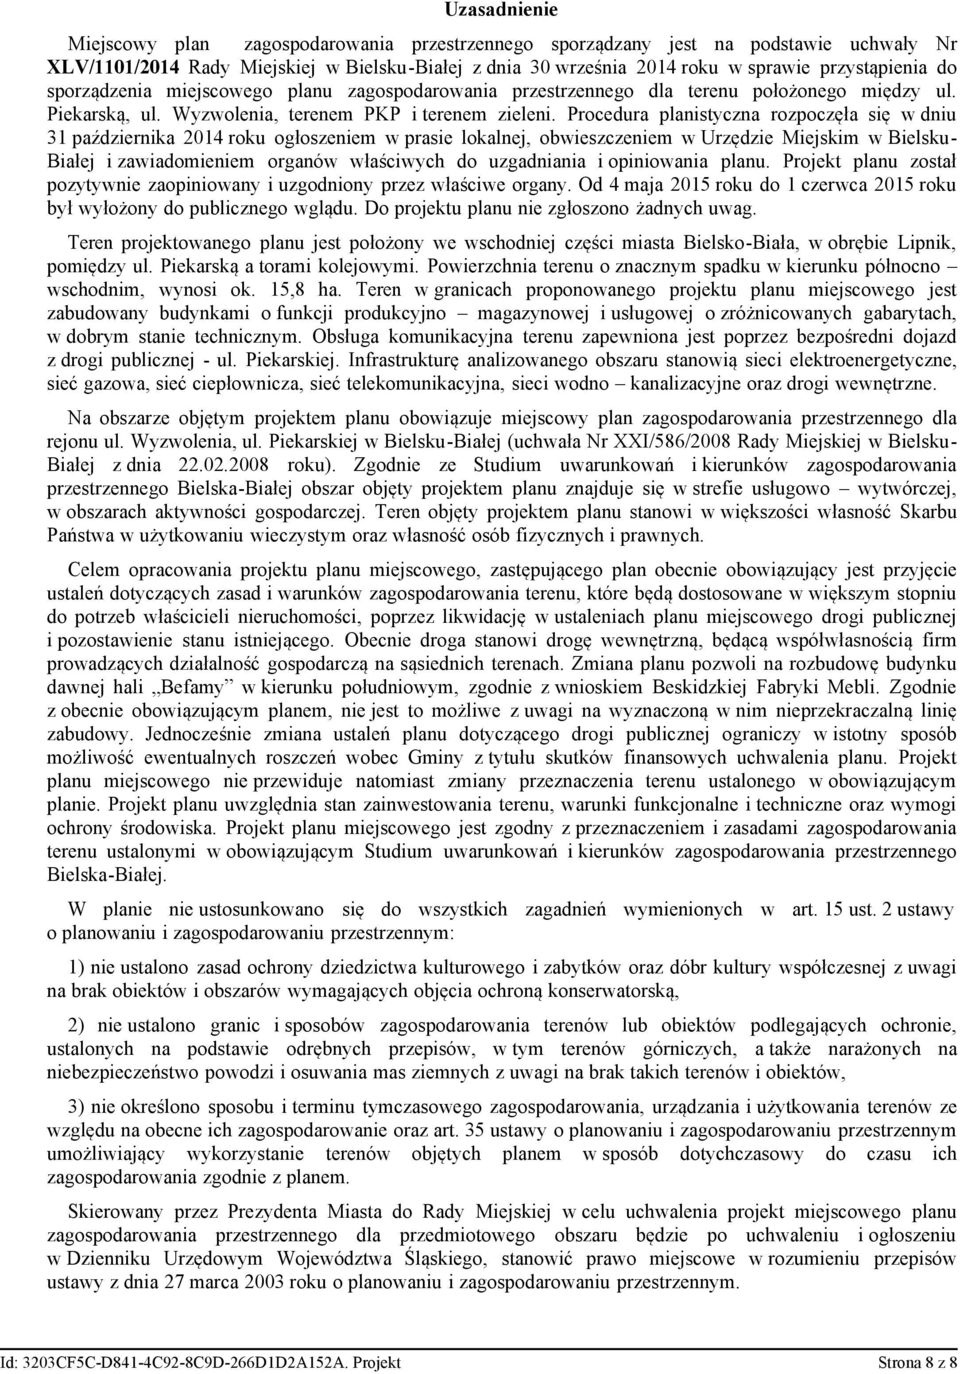 Procedura planistyczna rozpoczęła się w dniu 31 października 2014 roku ogłoszeniem w prasie lokalnej, obwieszczeniem w Urzędzie Miejskim w Bielsku- Białej i zawiadomieniem organów właściwych do